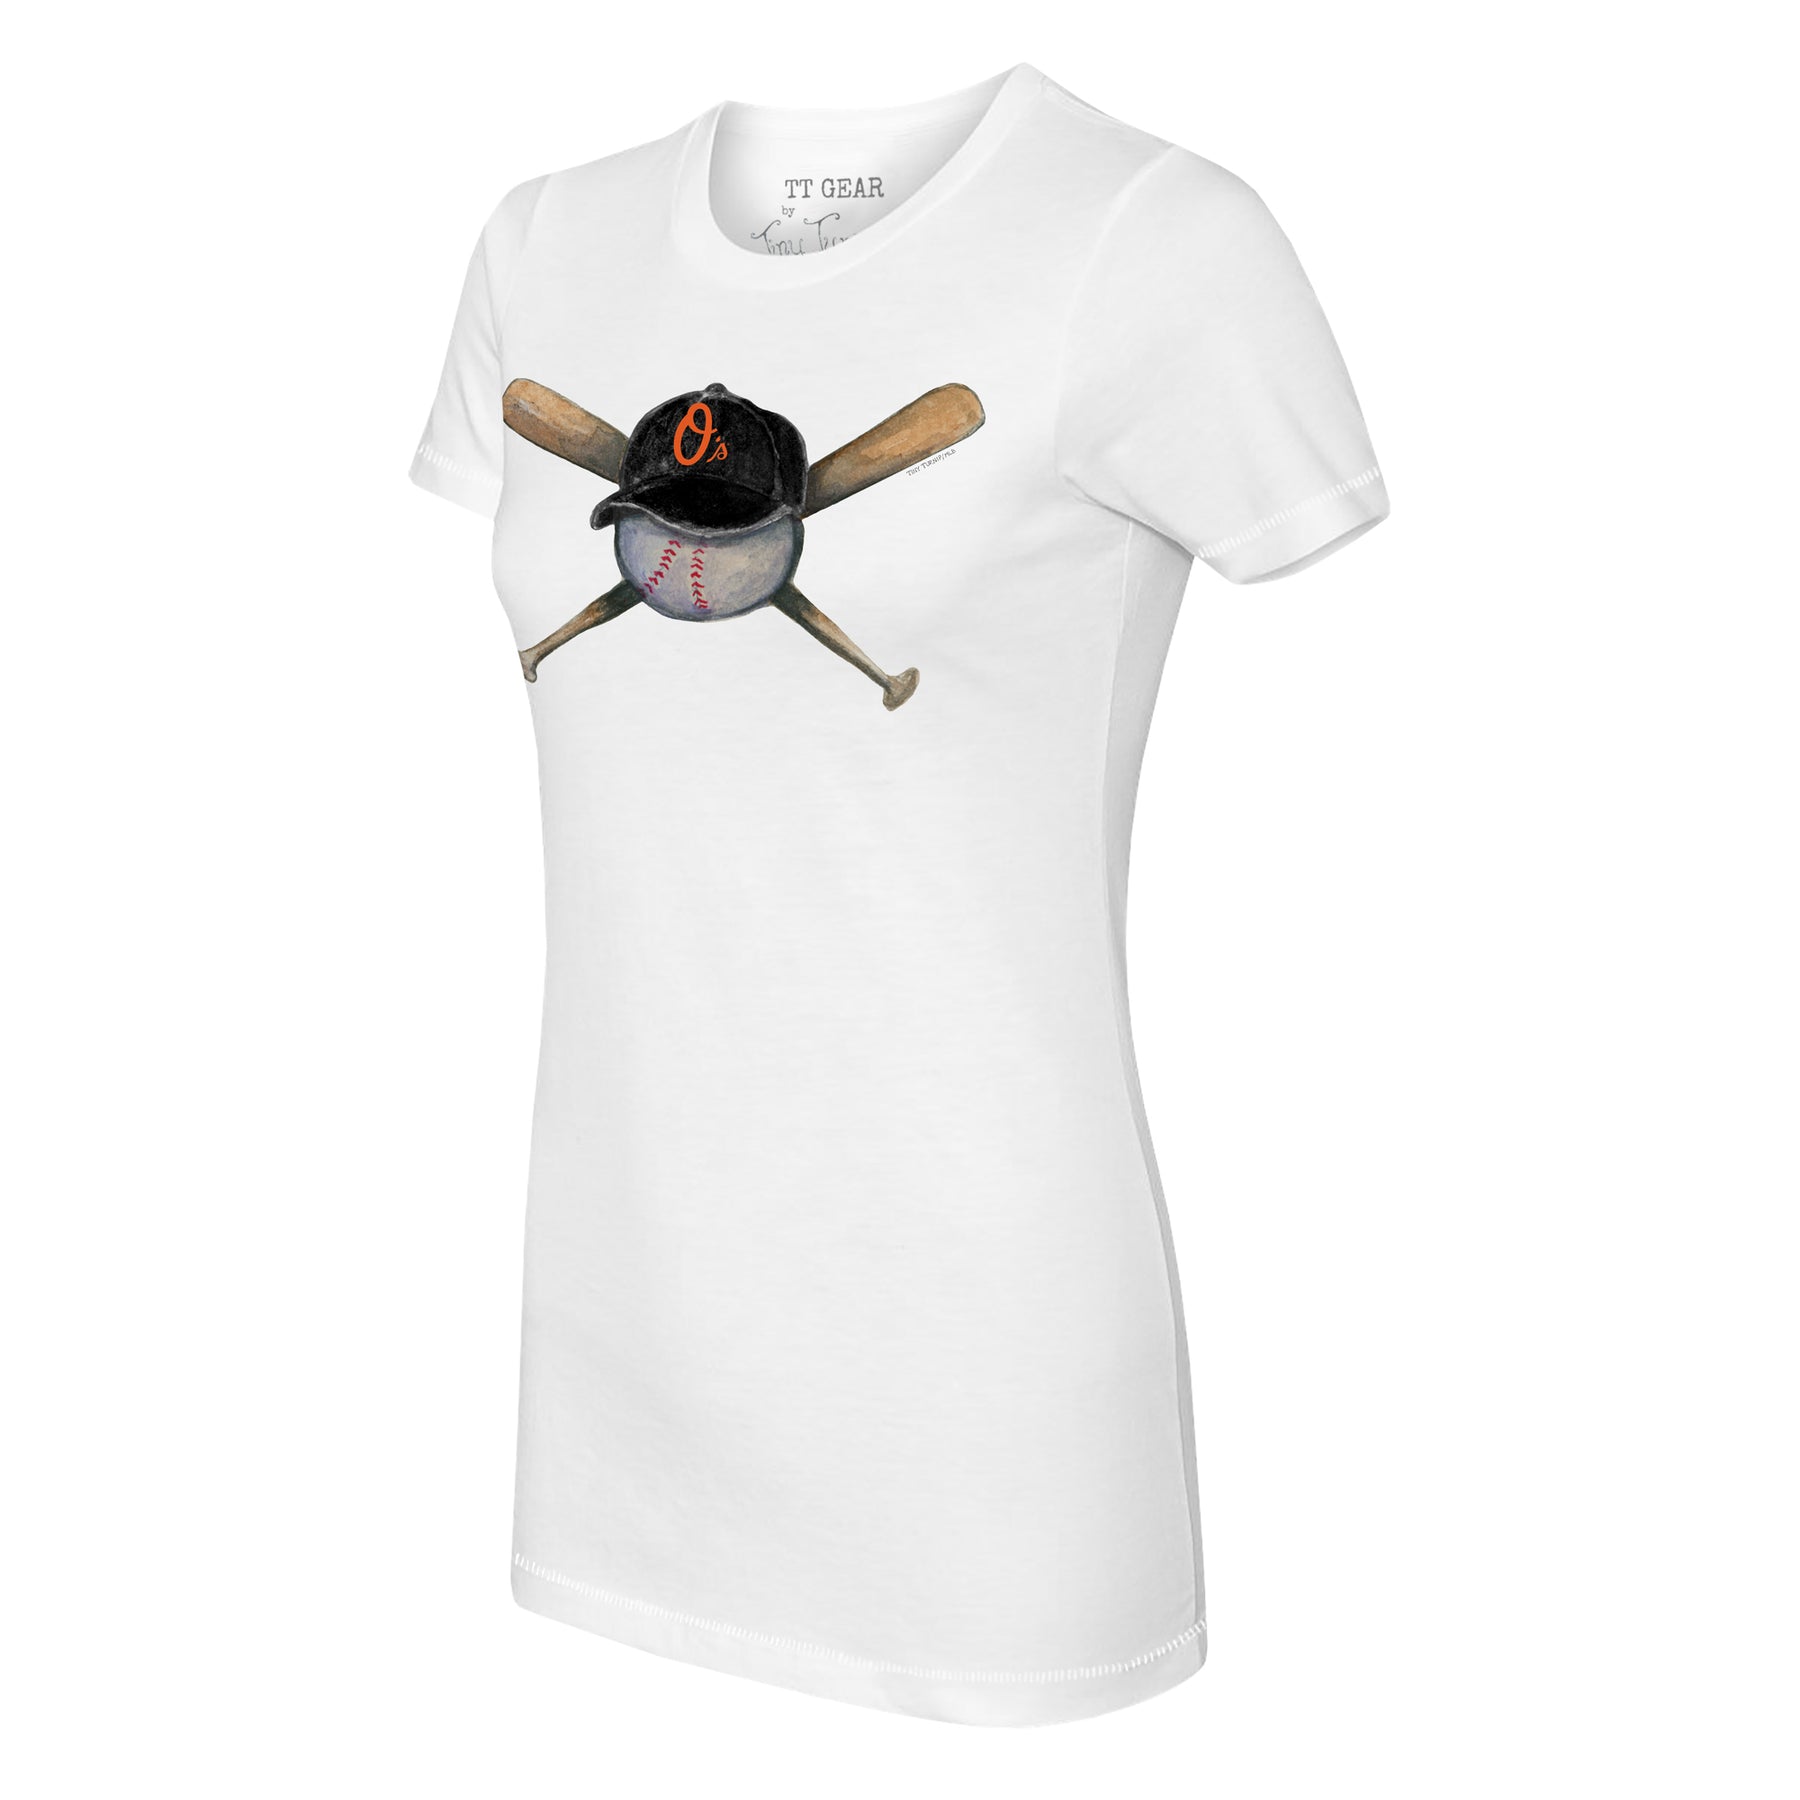 Tiny Turnip Baltimore Orioles Stega Tee Shirt Youth XL (12-14) / White